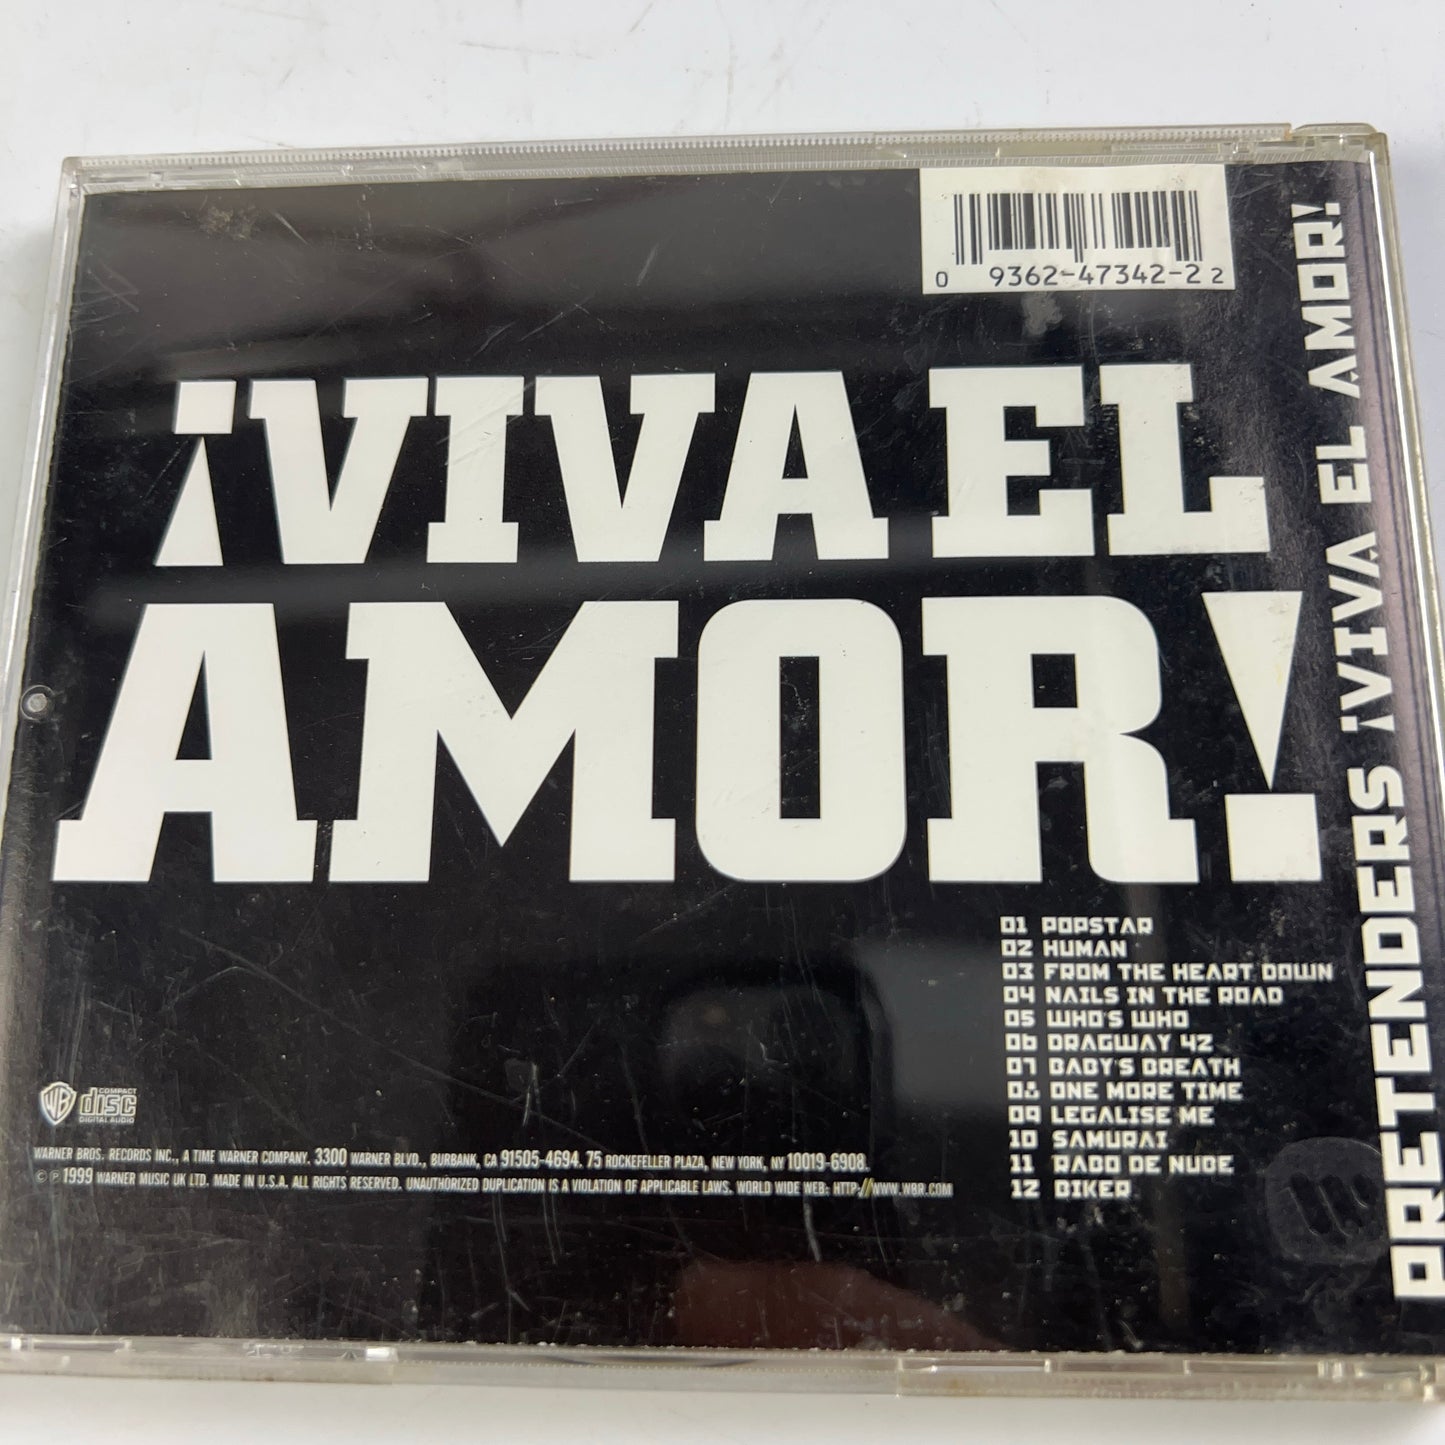 ¡Viva El Amor! by The Pretenders (CD, 1999)